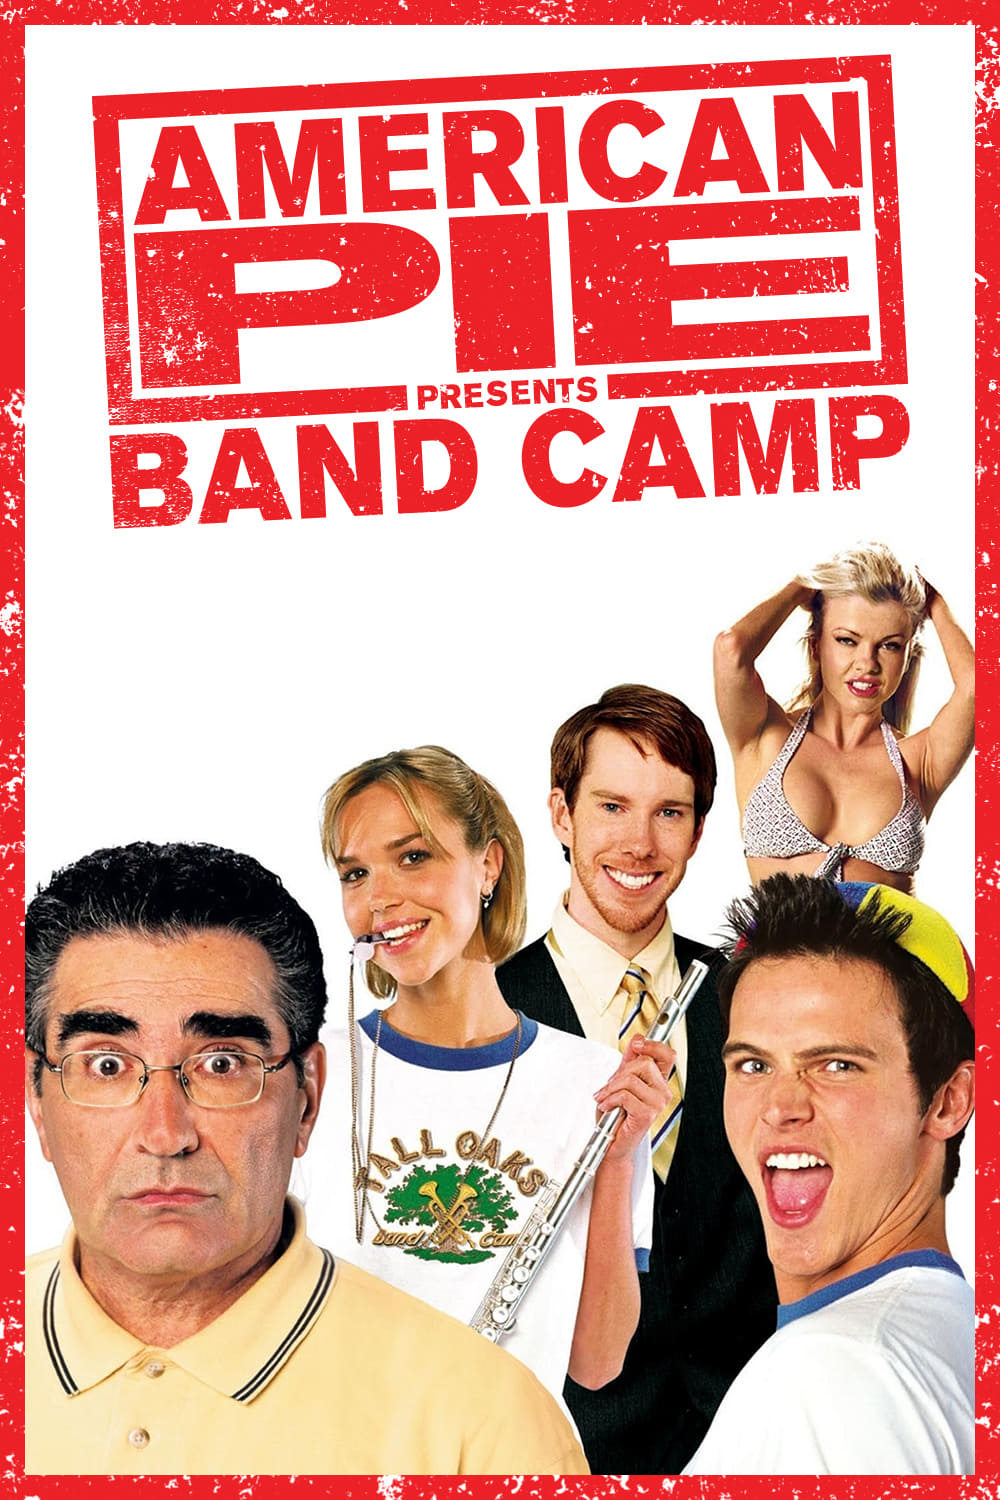 ดูหนังออนไลน์ หนังใหม่ล่าสุด AMERICAN PIE 4 PRESENTS BAND CAMP (2005)